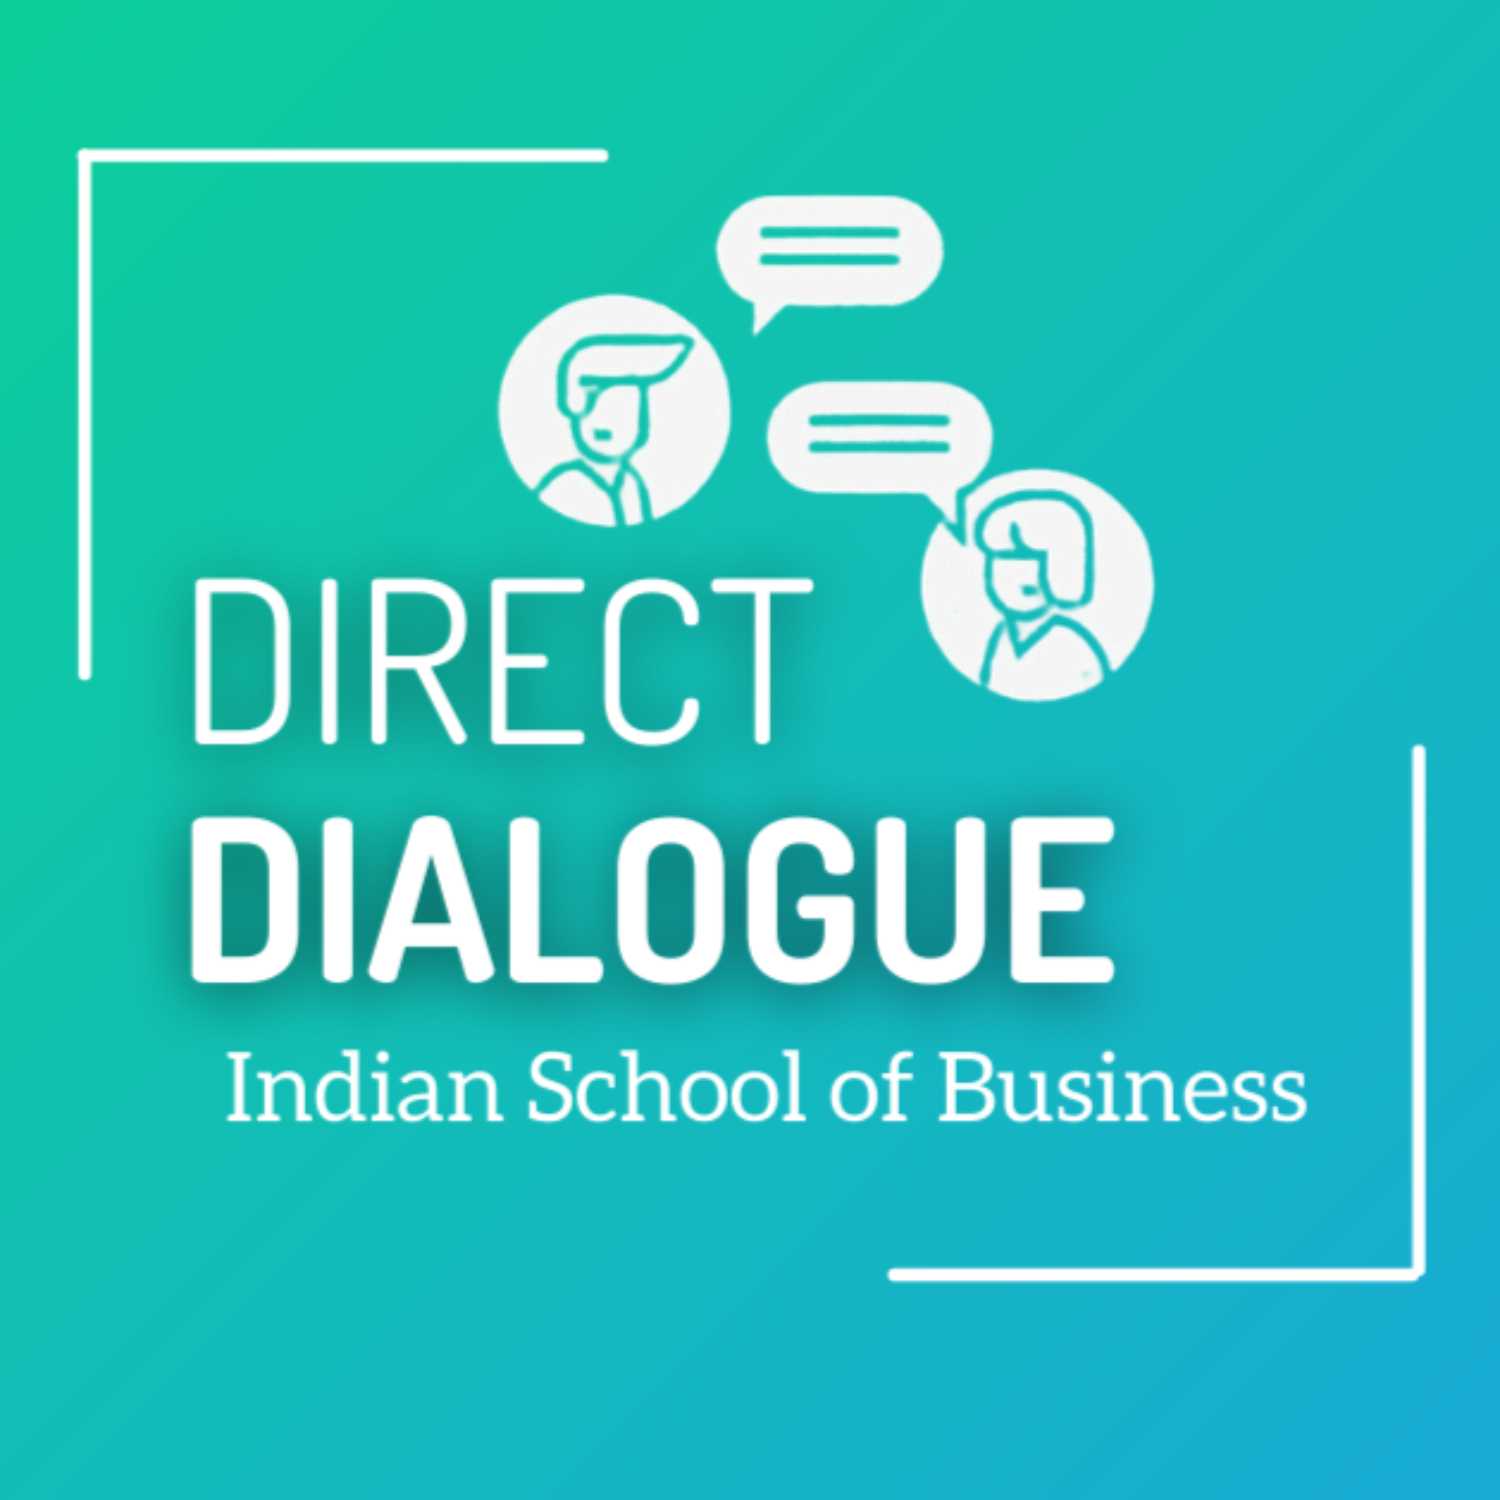 Direct Dialogue